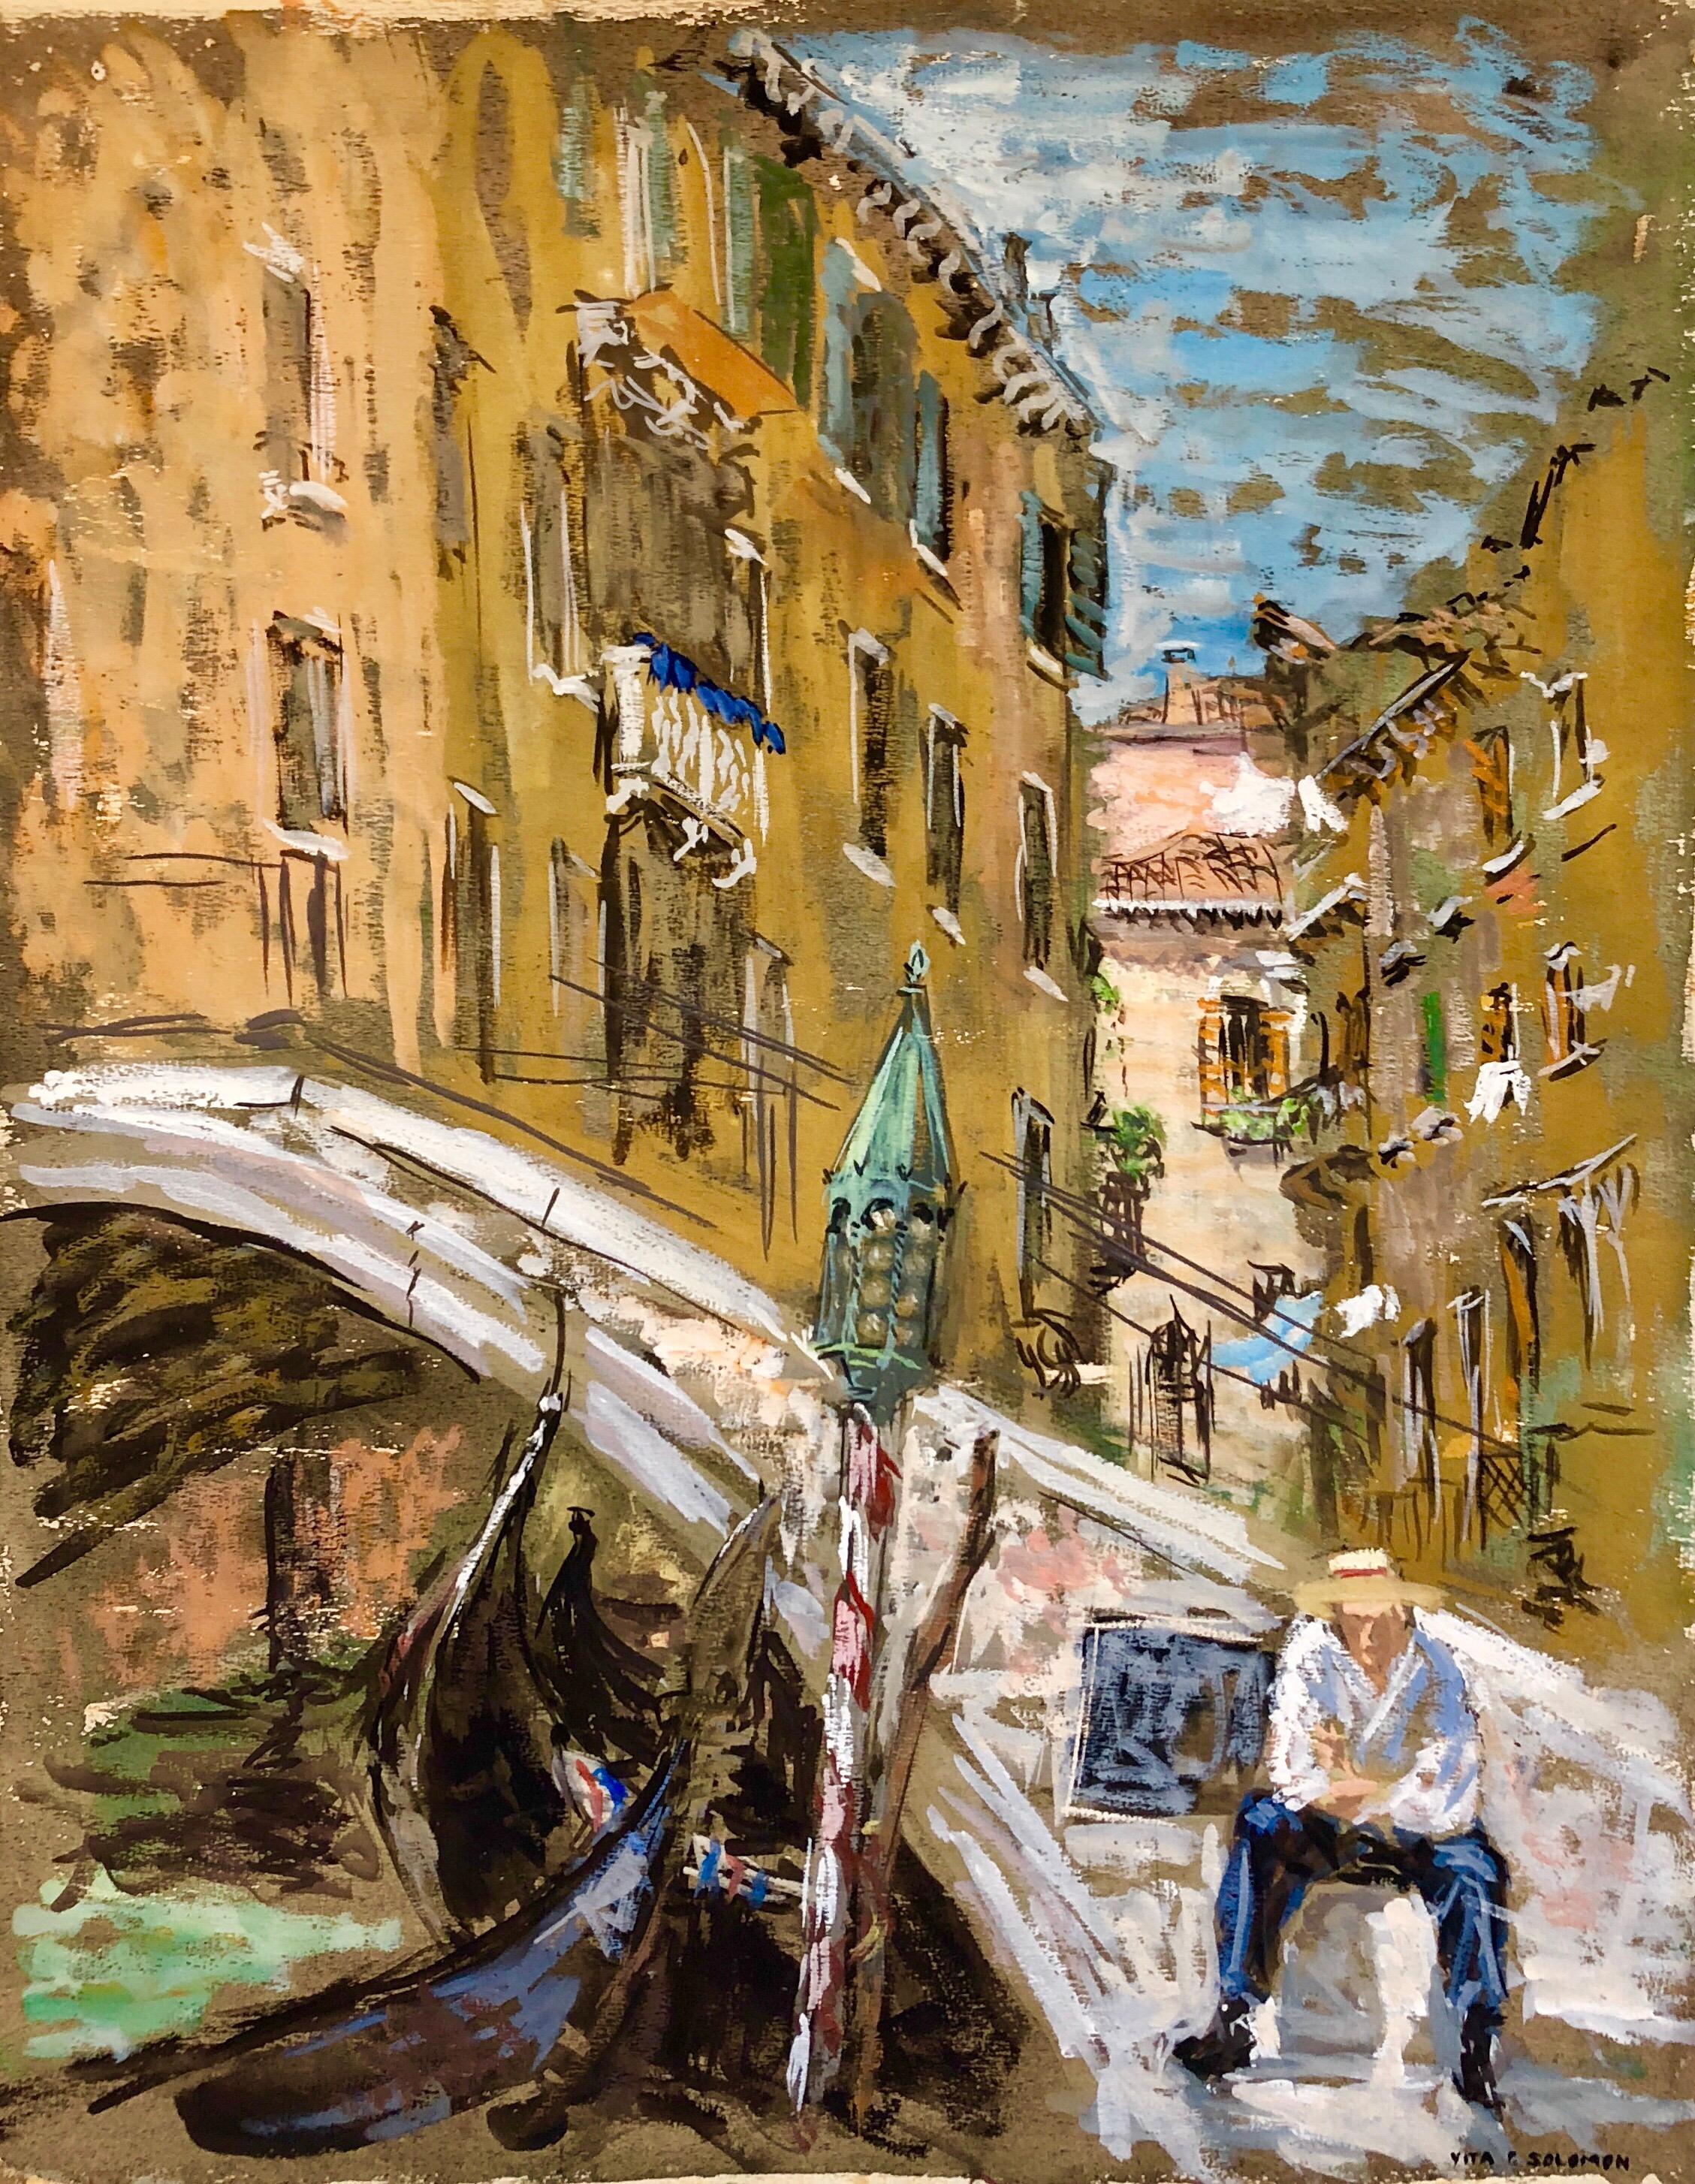 Landscape Painting Vita Solomon - Venice, Italie, paysage à la gouache avec gondole de poids